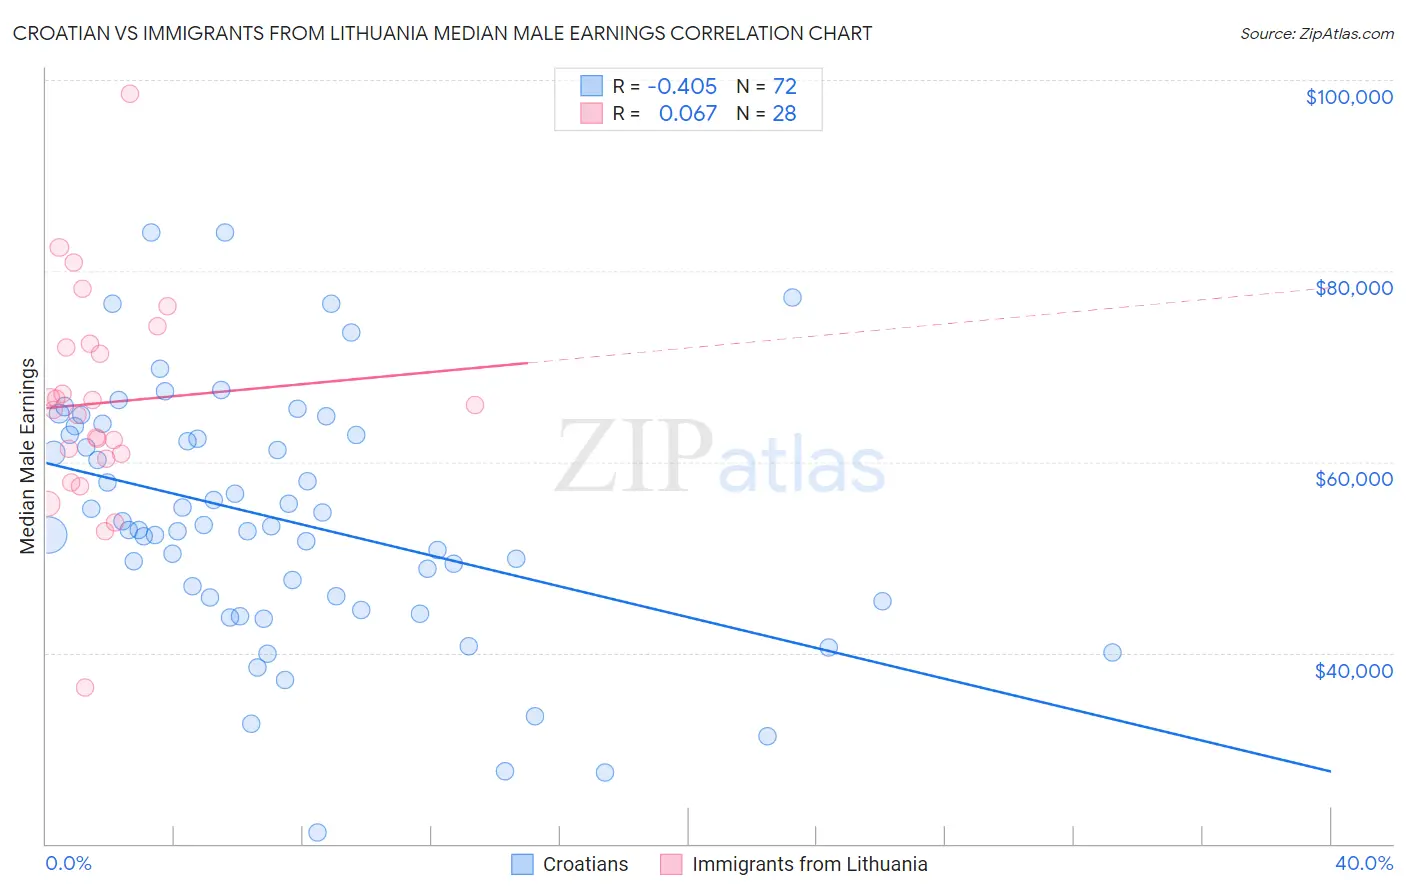 Croatian vs Immigrants from Lithuania Median Male Earnings